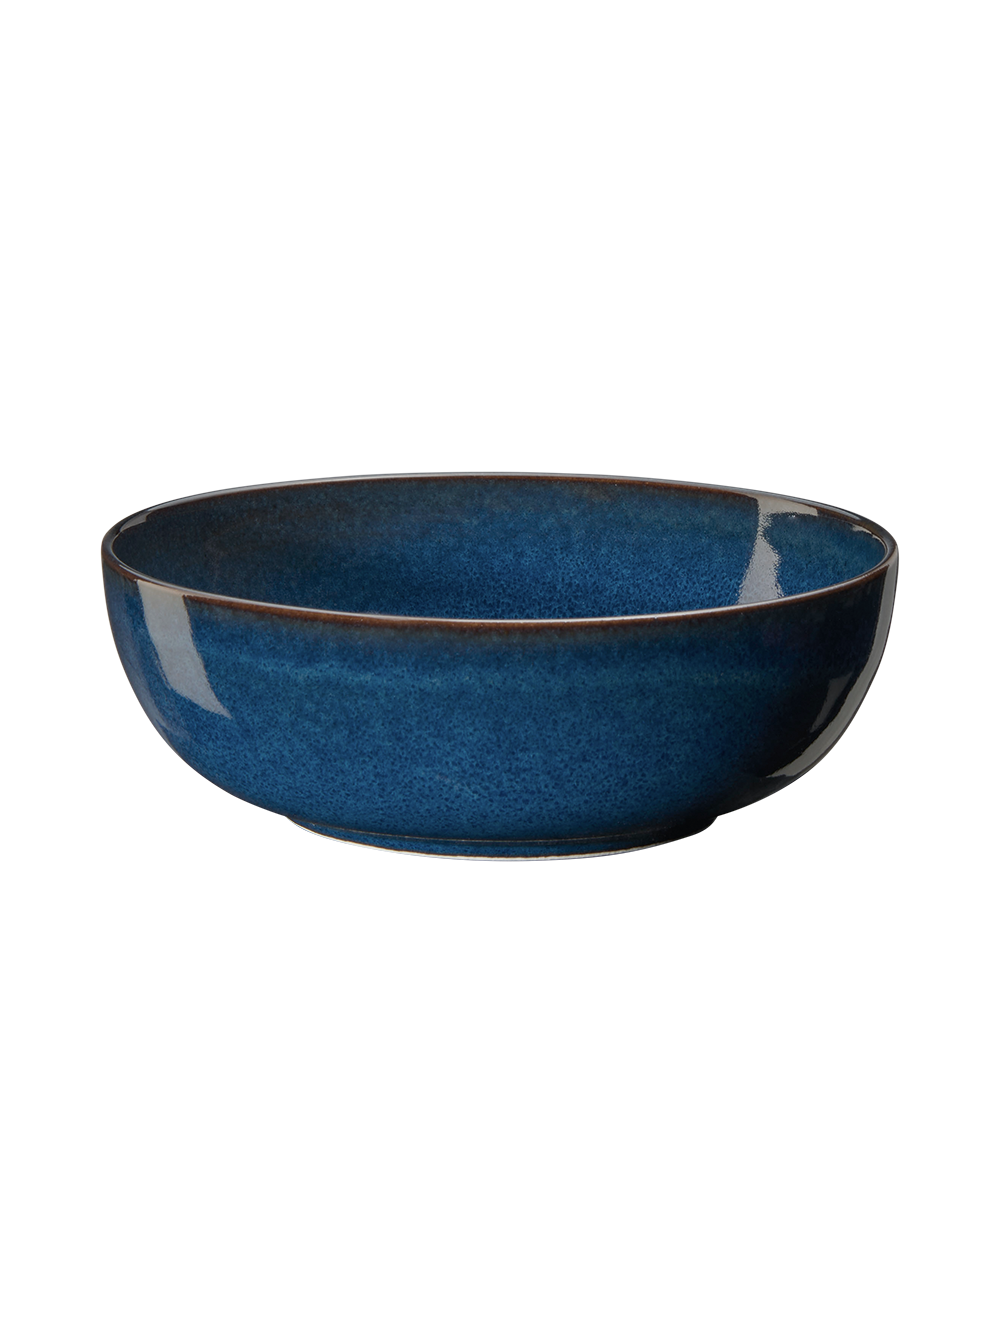 ASA Schale, midnight blue D. 9 cm, H. 5,5 cm, 0,125 l.